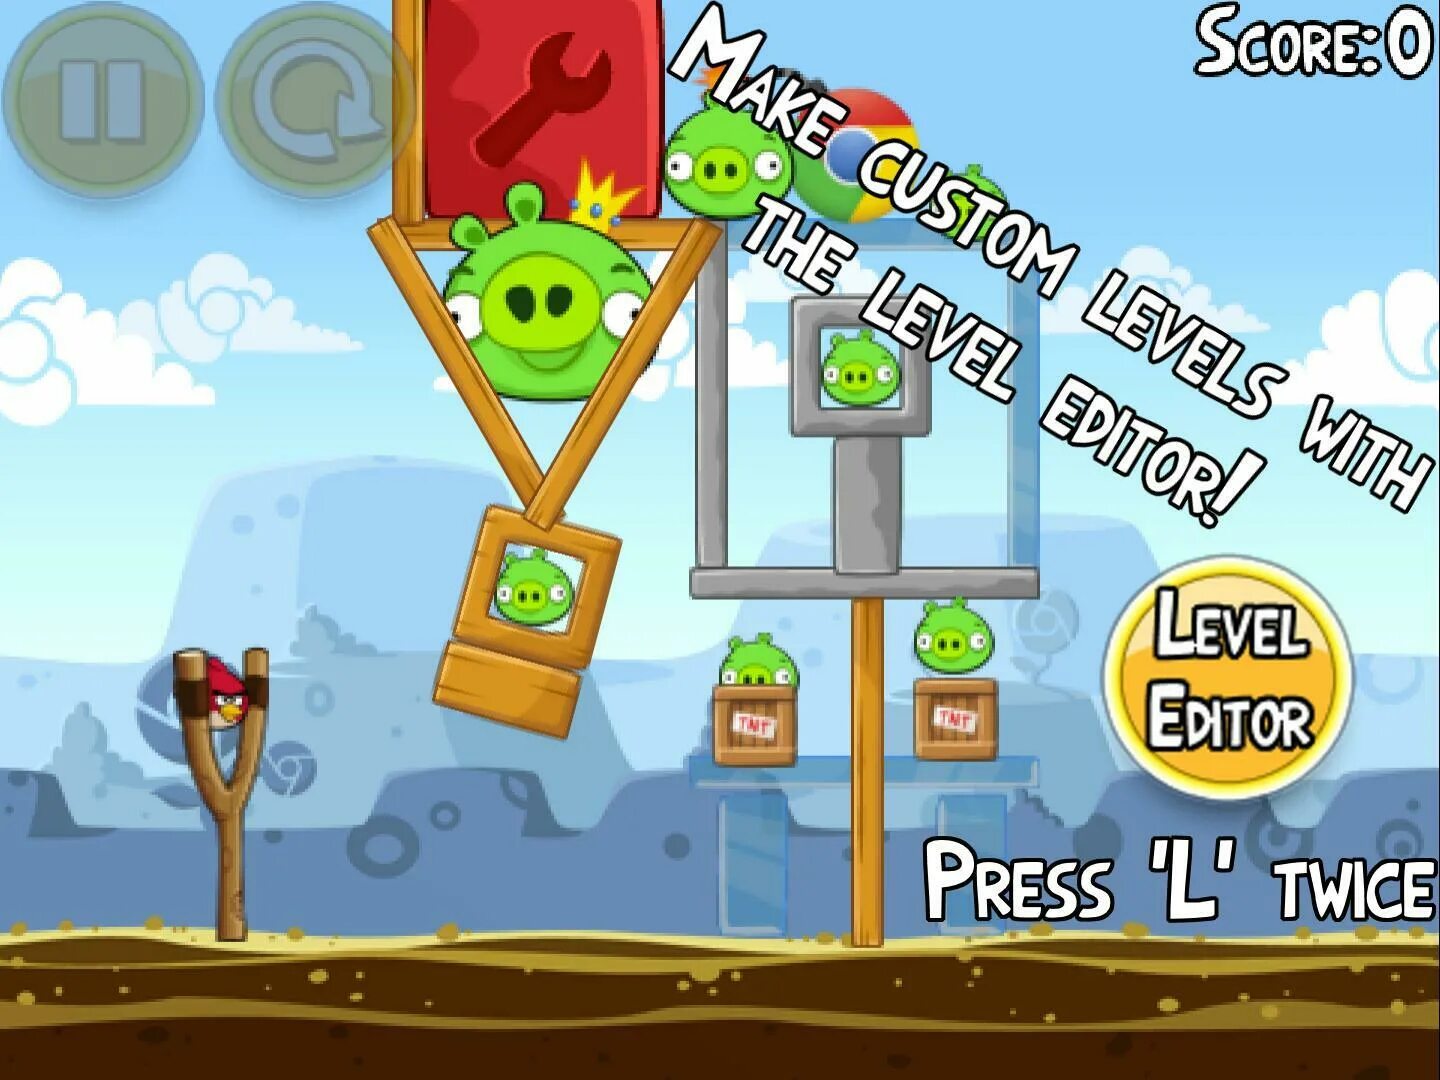 Birds chrome. Angry Birds Chrome. Angry Birds Chrome Beta. Angry Birds Chrome Dimension. Игра злые языки как играть.